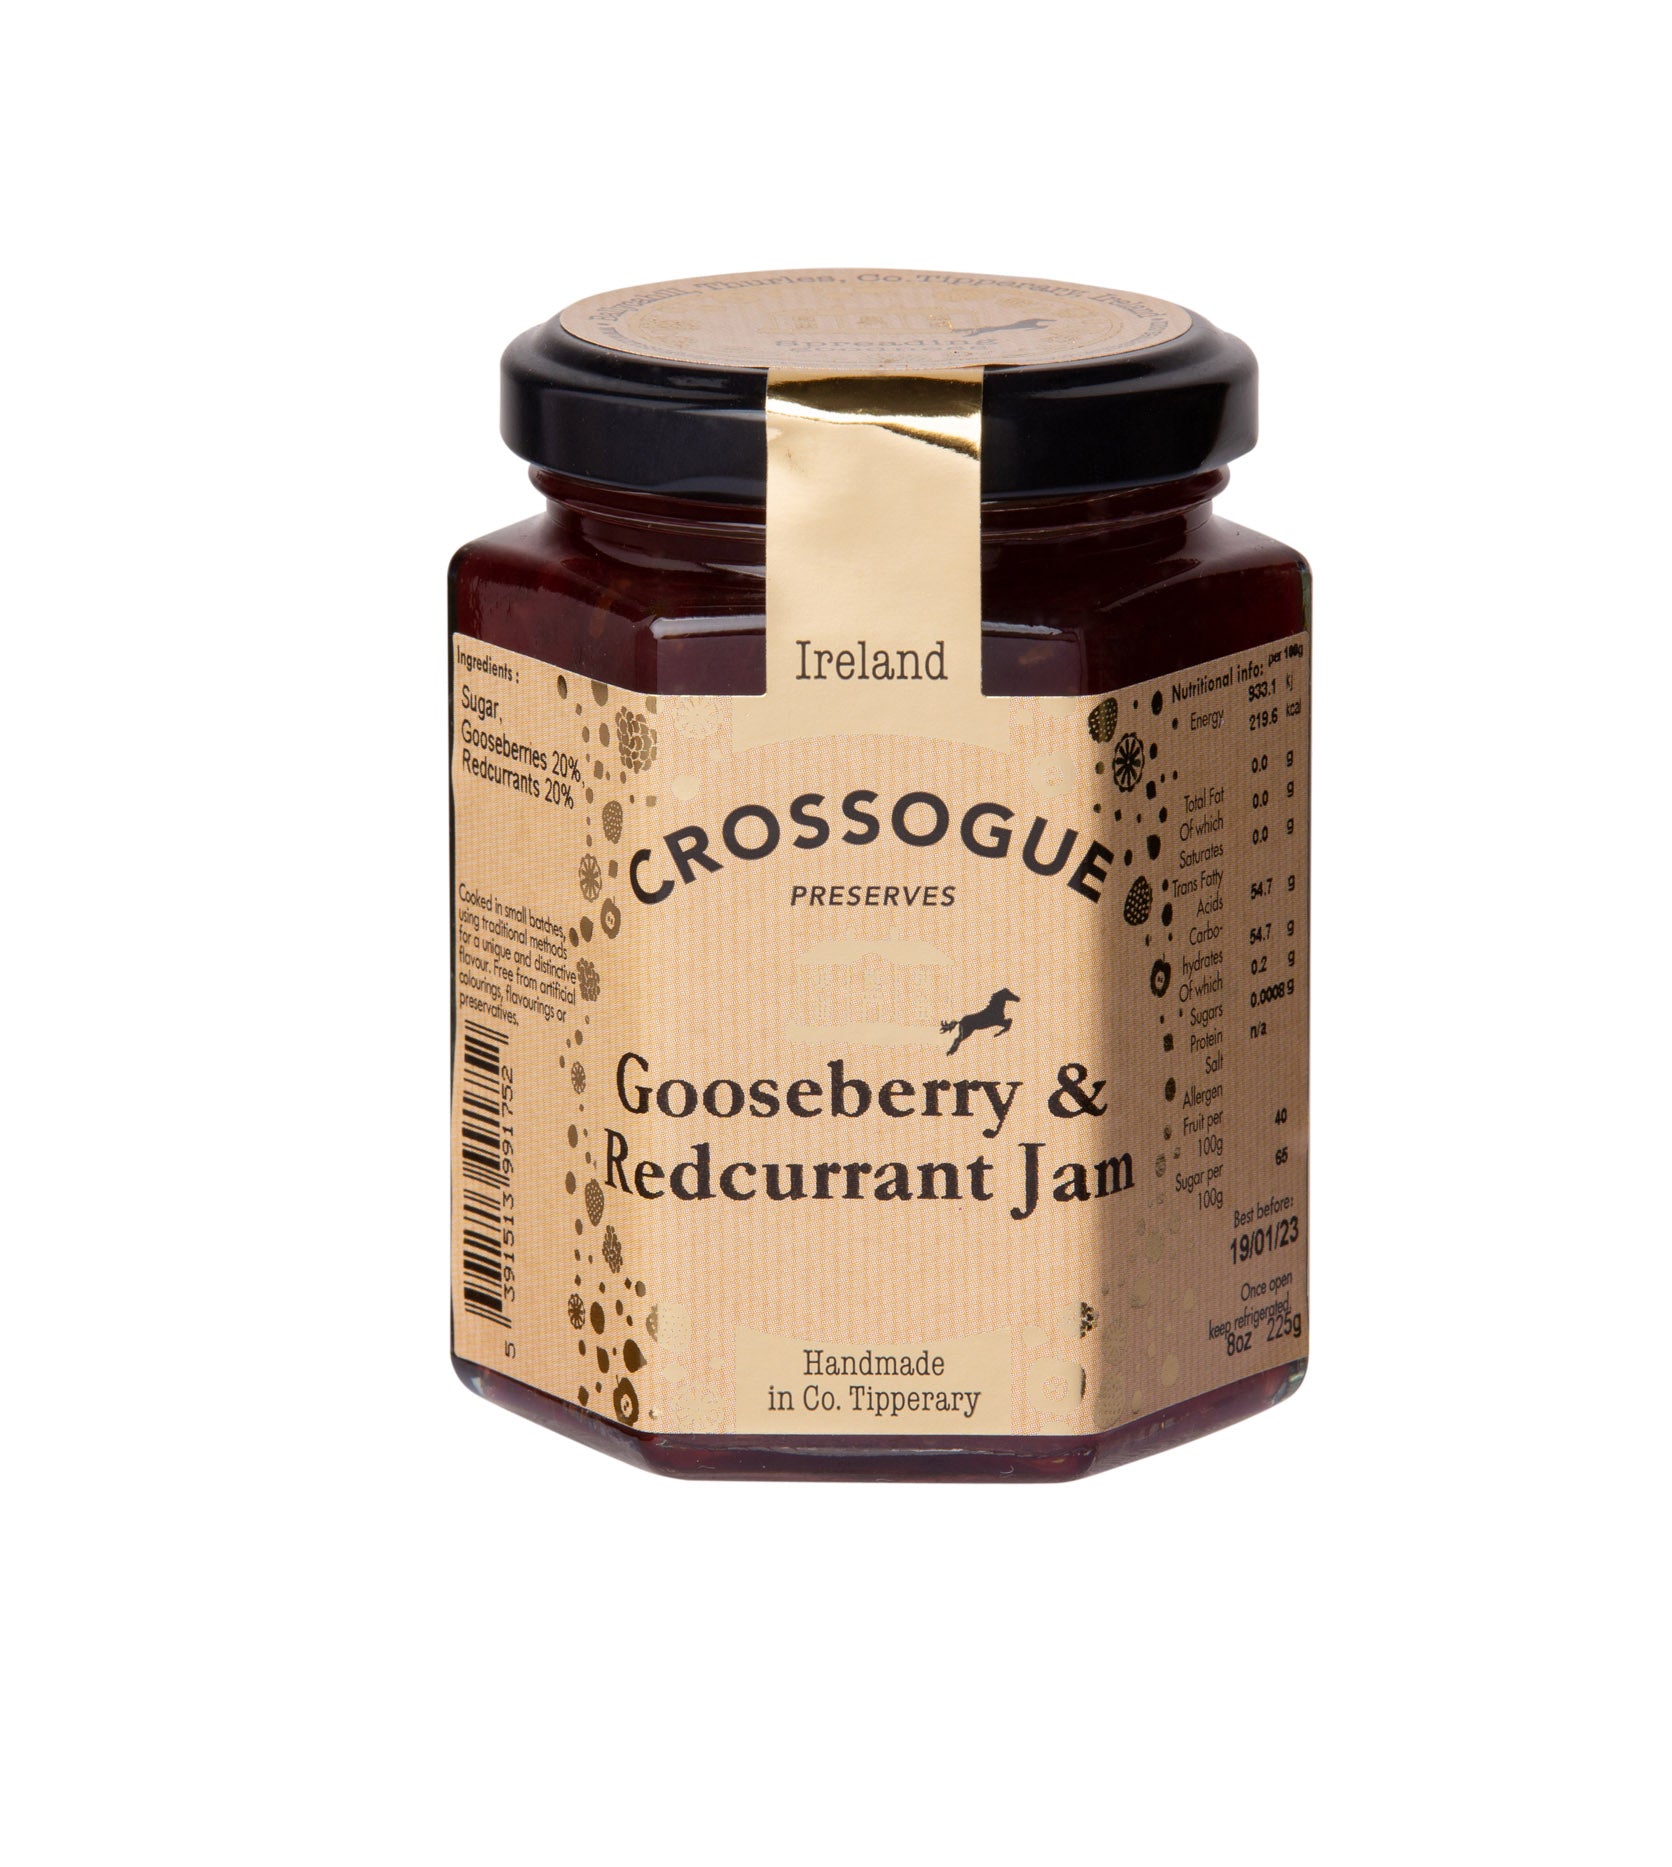 Gooseberry & Redcurrant Jam